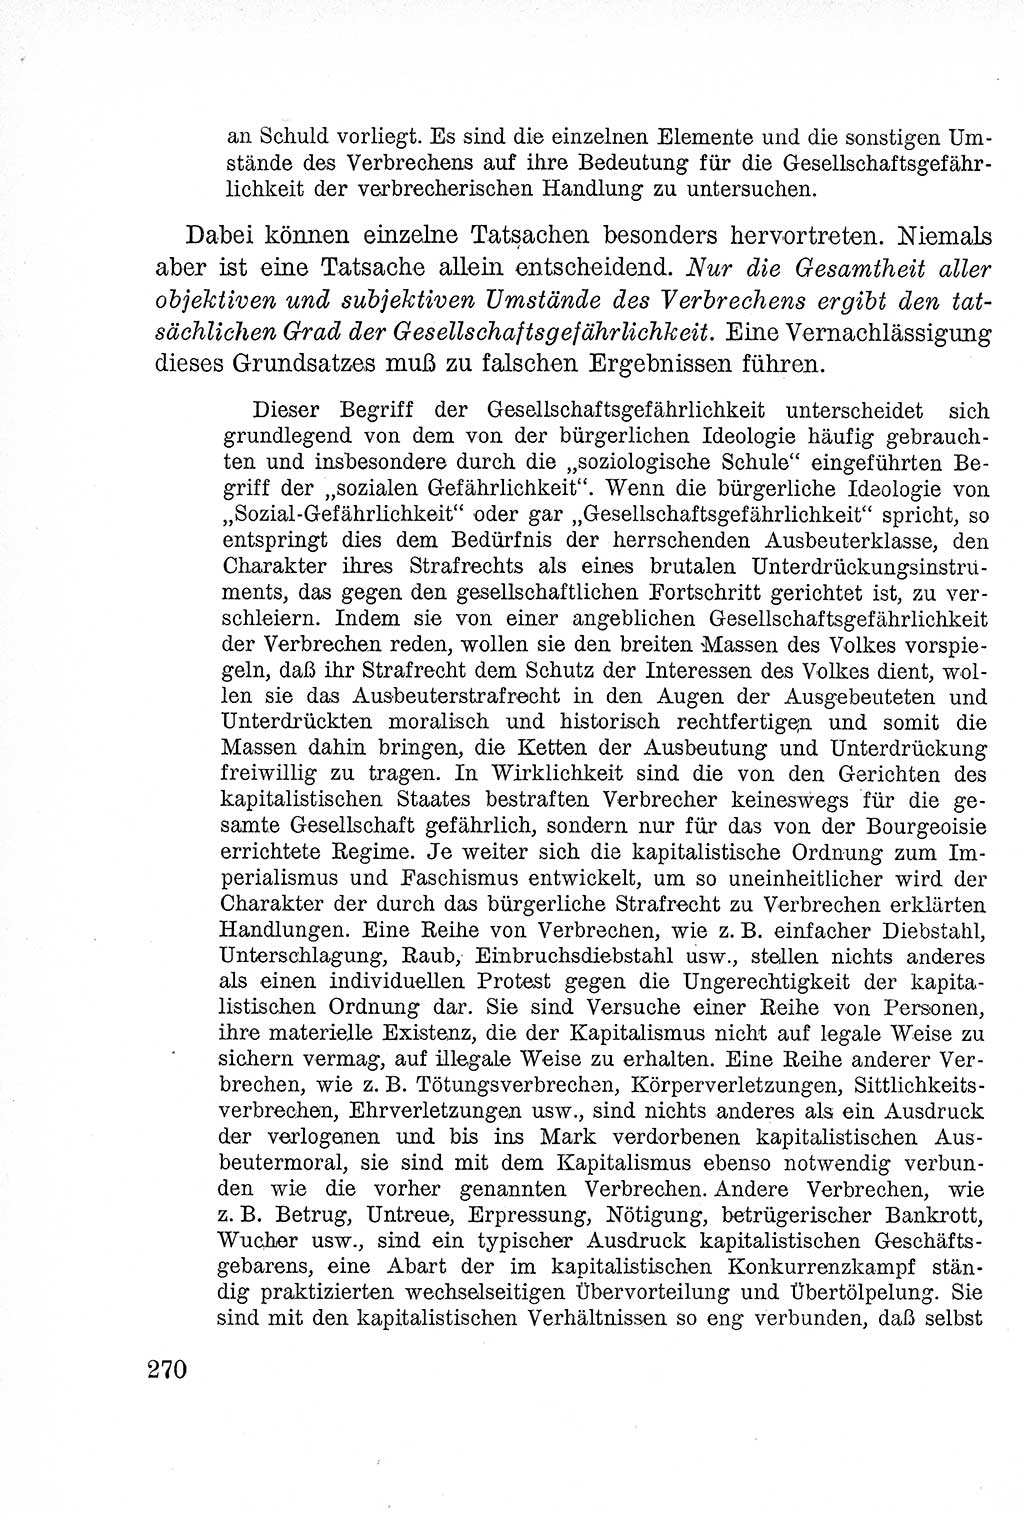 Lehrbuch des Strafrechts der Deutschen Demokratischen Republik (DDR), Allgemeiner Teil 1957, Seite 270 (Lb. Strafr. DDR AT 1957, S. 270)